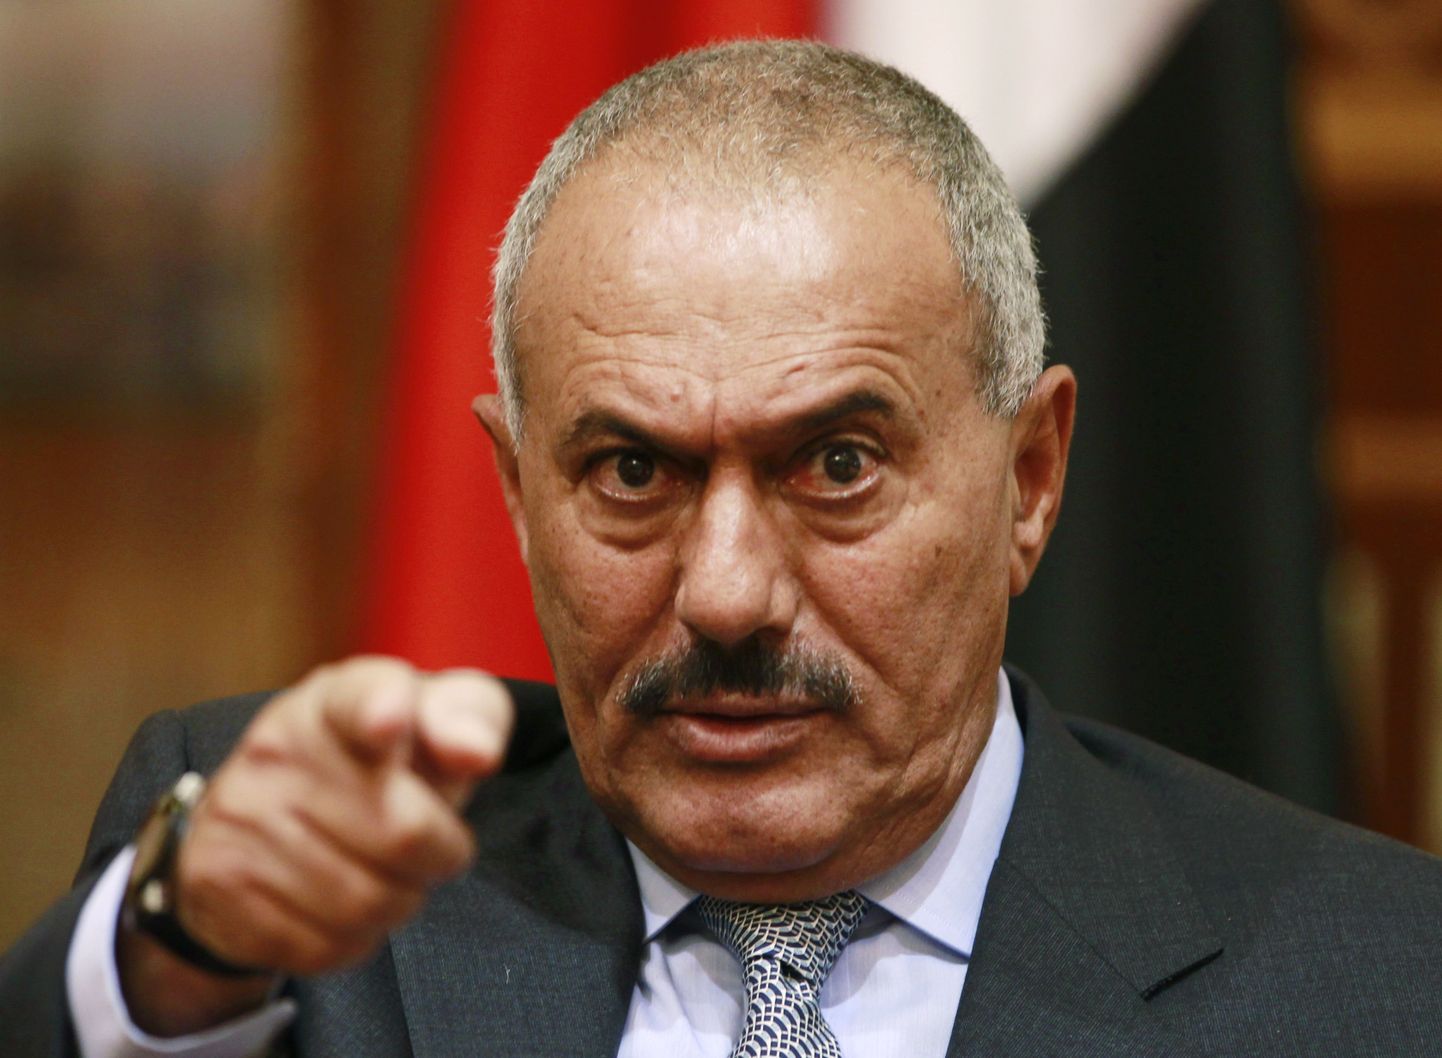 Jeemeni president Ali Abdullah Saleh